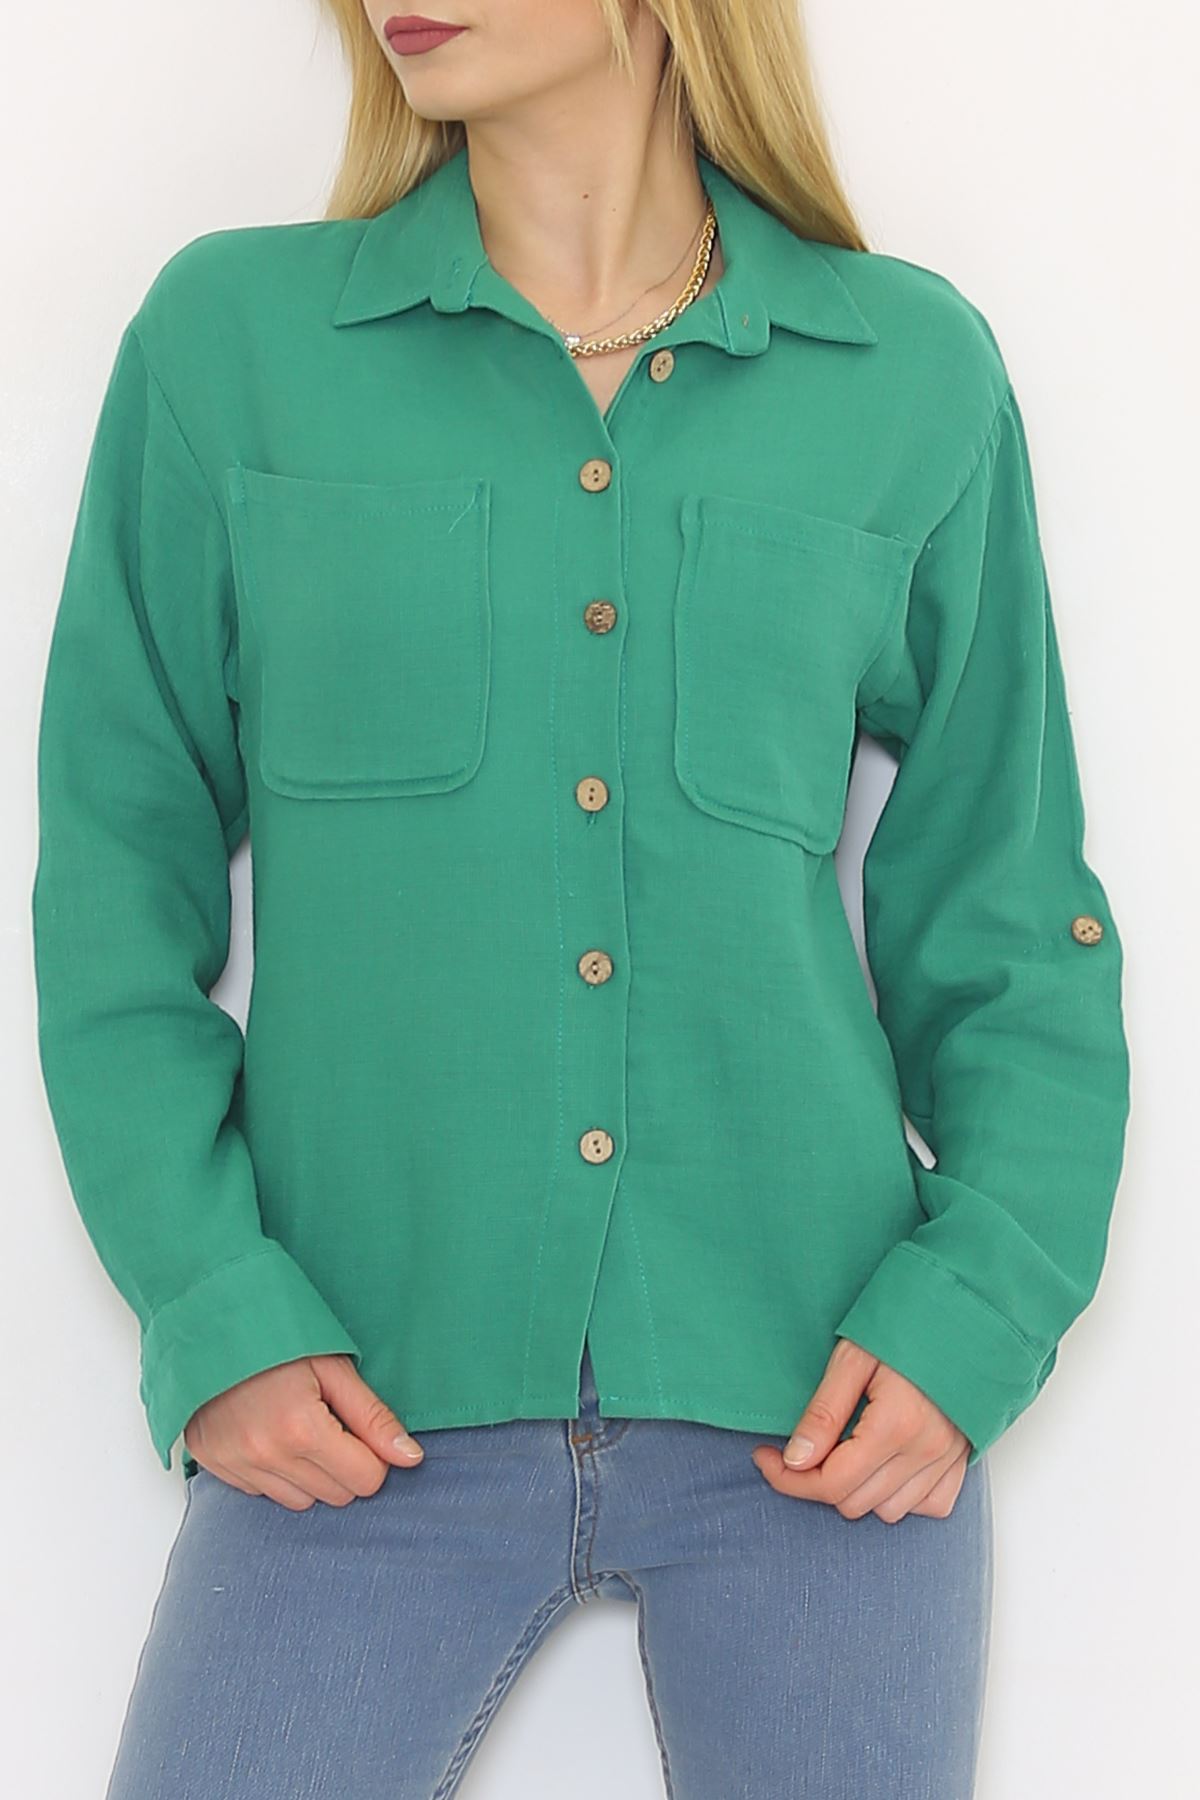 Cepli Gömlek Yeşil - 2149.1602.